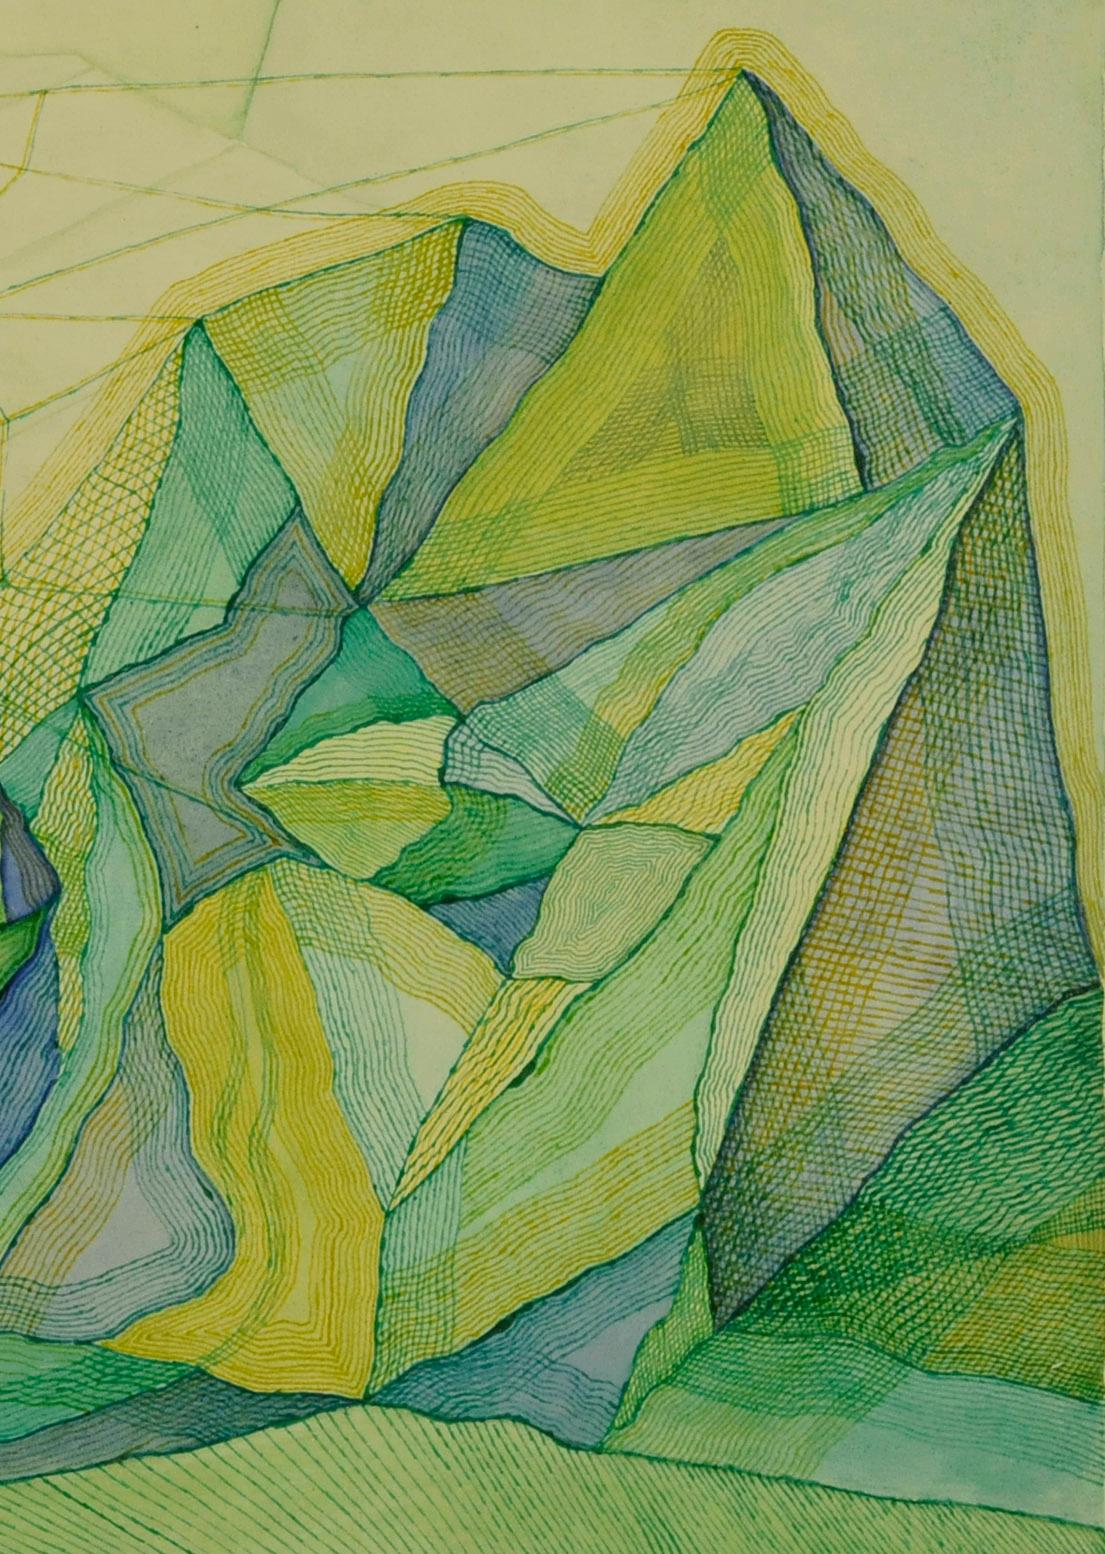 Cobwebs and Rocks - Green Abstract Drawing by Benjamin G. Benno